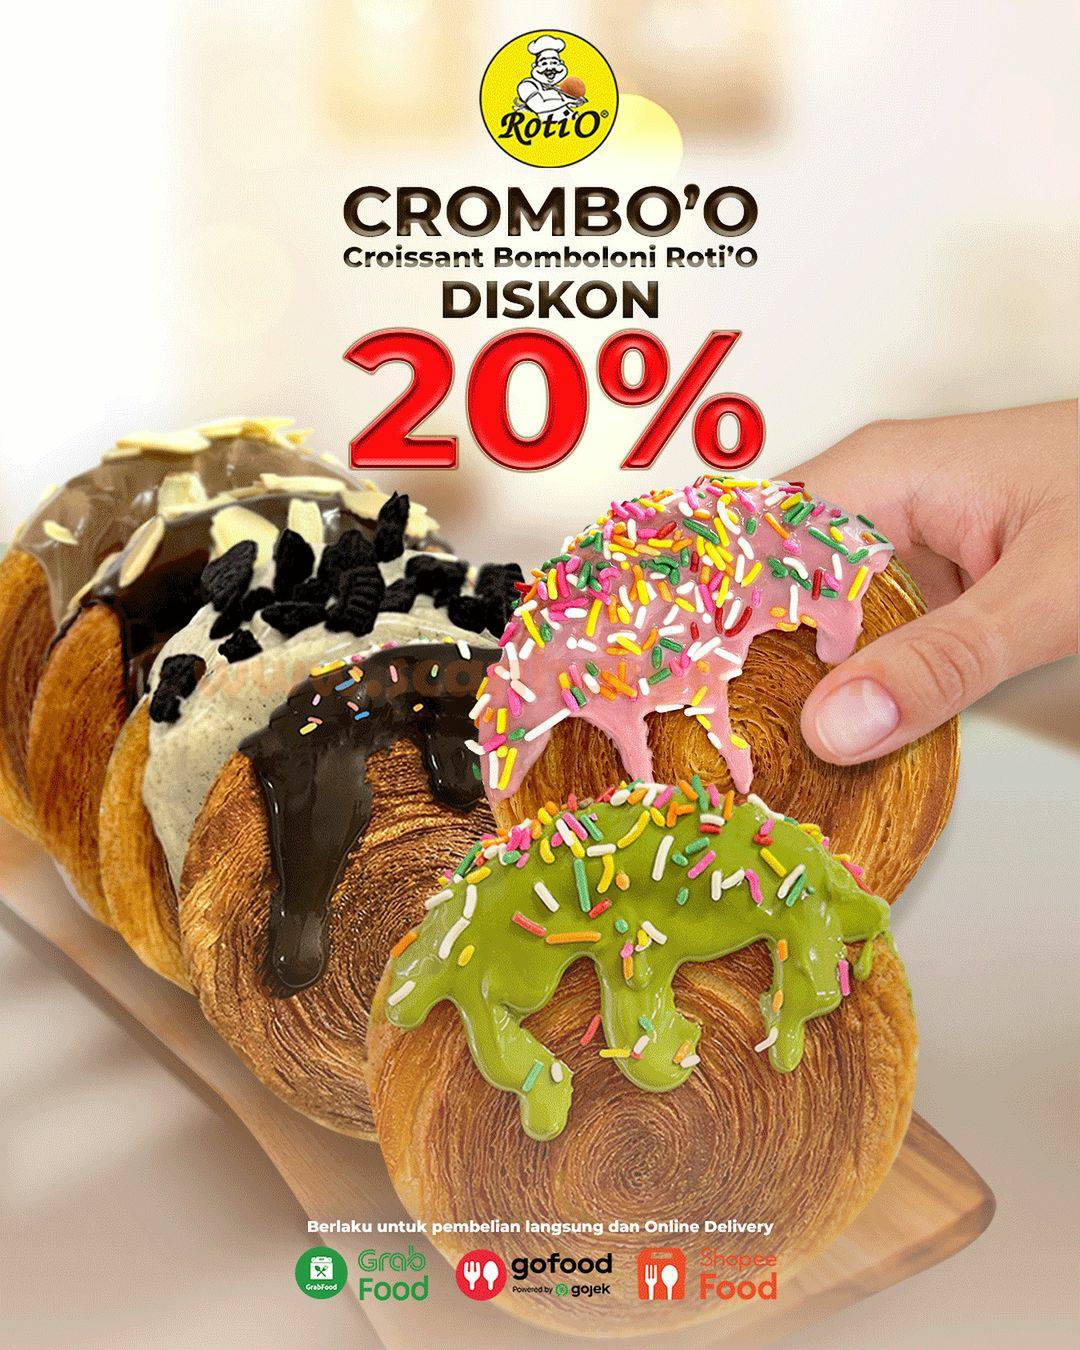 Promo RotiO Crombo’O Dari Roti O Diskon 20%